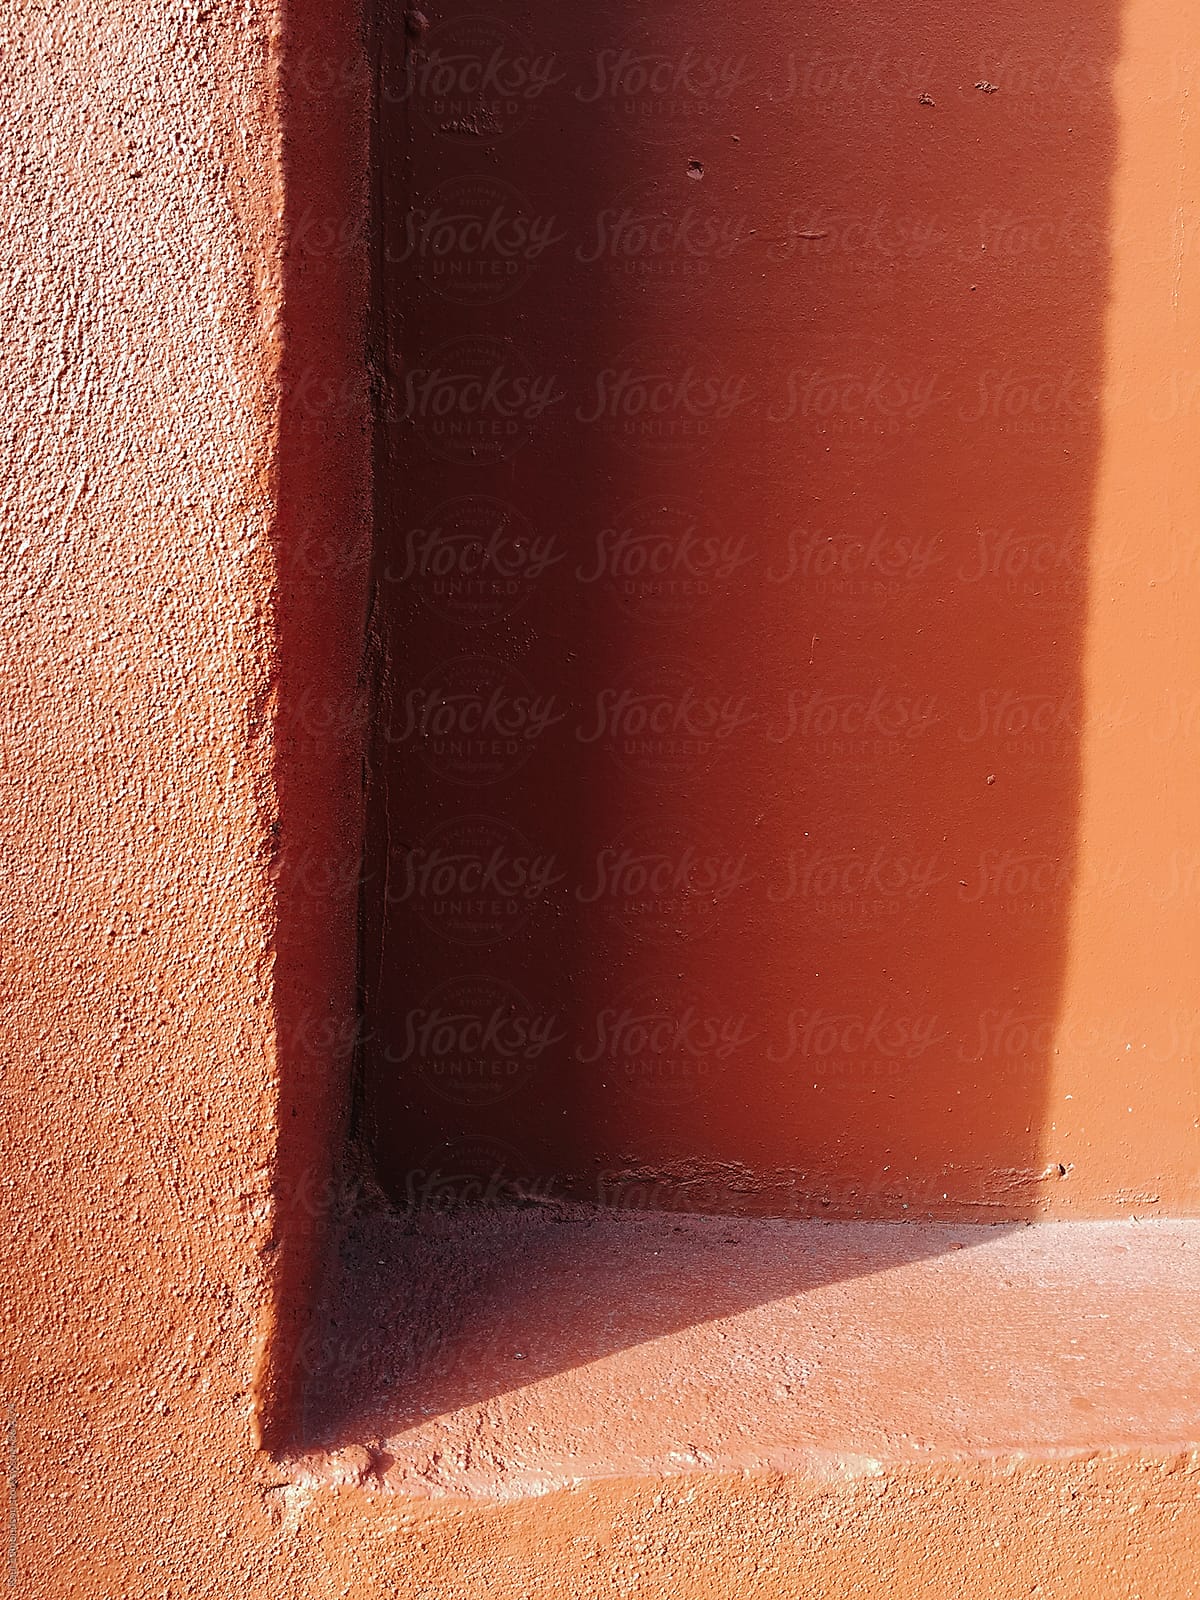 Corner of building doorway, casting shadow